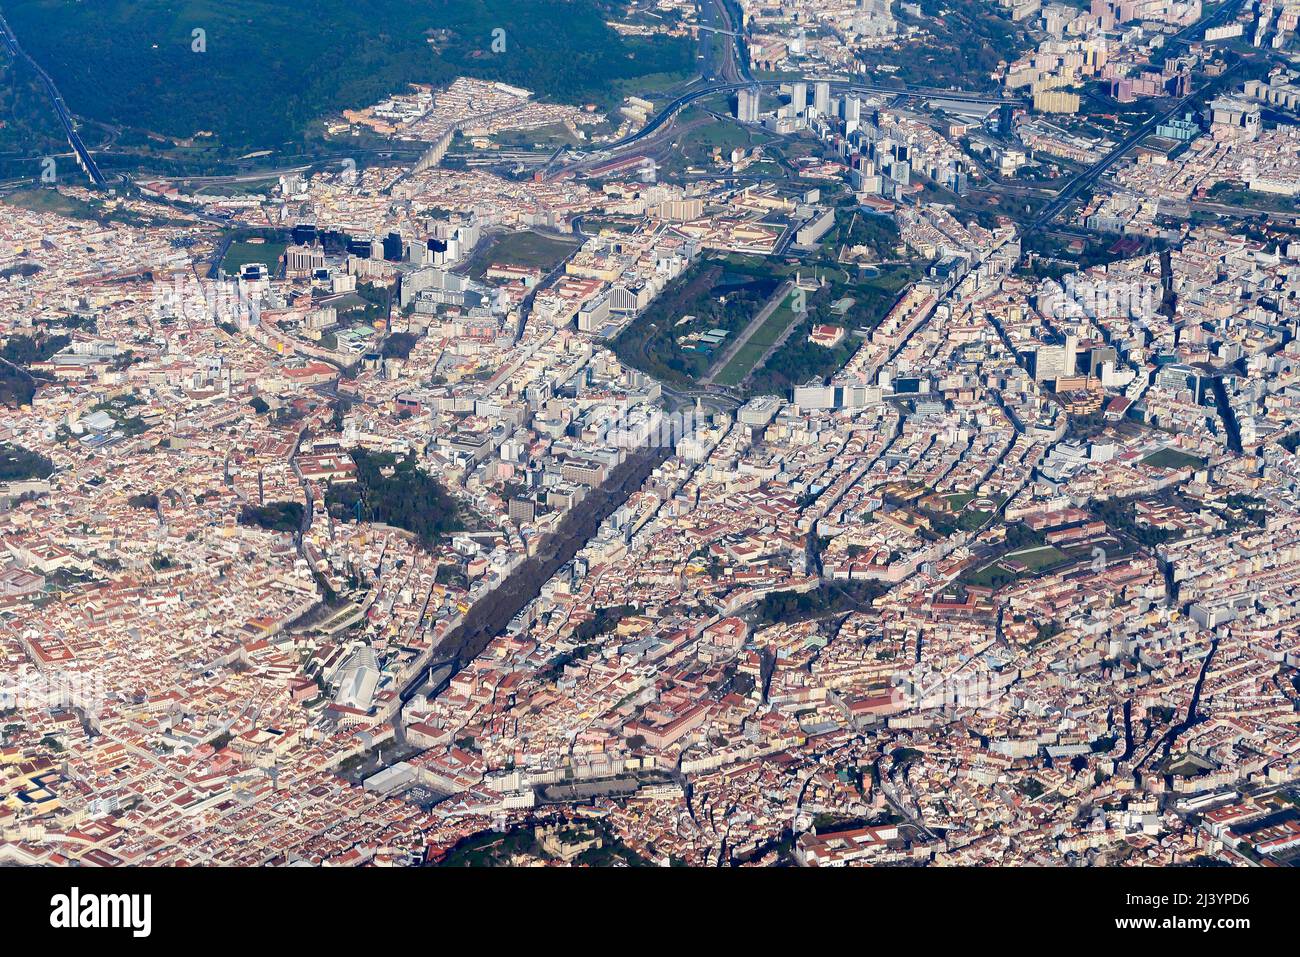 Lissabon-Luftaufnahme mit dem Boulevard Av. Da Liberdade, dem Marques do Pombal-Platz und dem Park Eduardo VII. Portugal Hauptstadt Lissabon von oben gesehen. Stockfoto